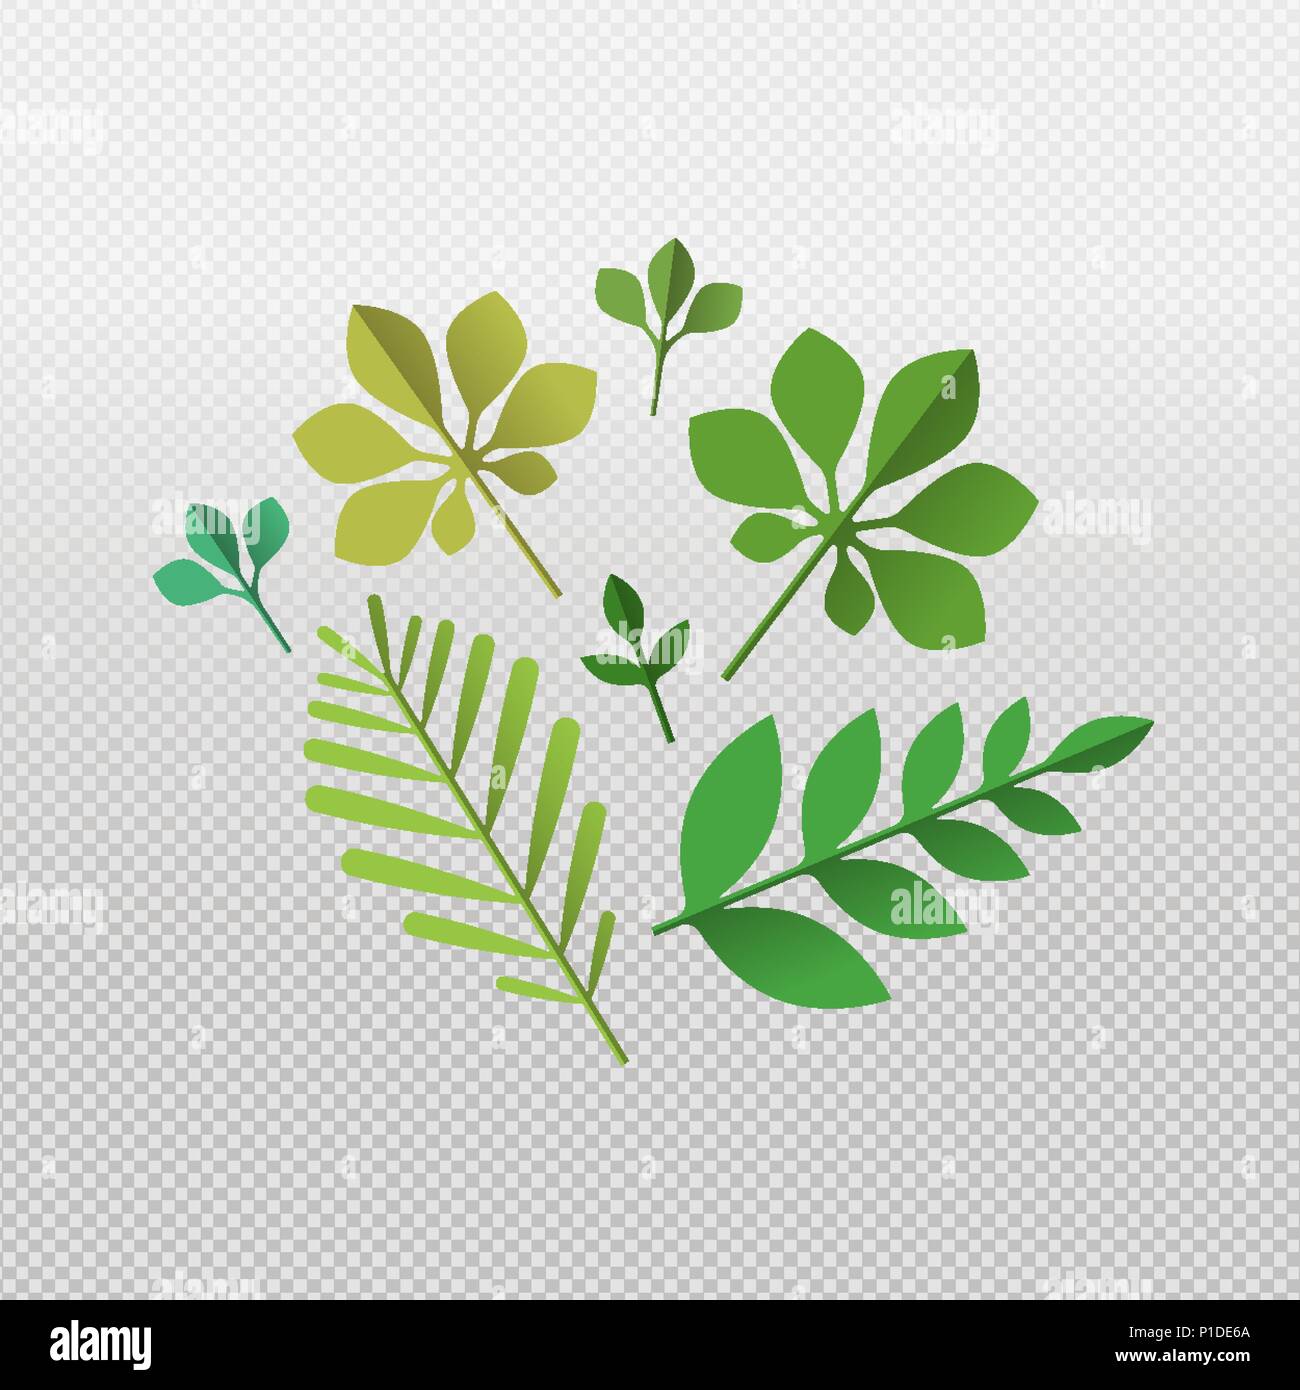 Conjunto de hojas verdes tropicales sobre fondo transparente. Hojas de verano aislado de exóticas palmeras y plantas de la selva. Vector EPS10. Ilustración del Vector